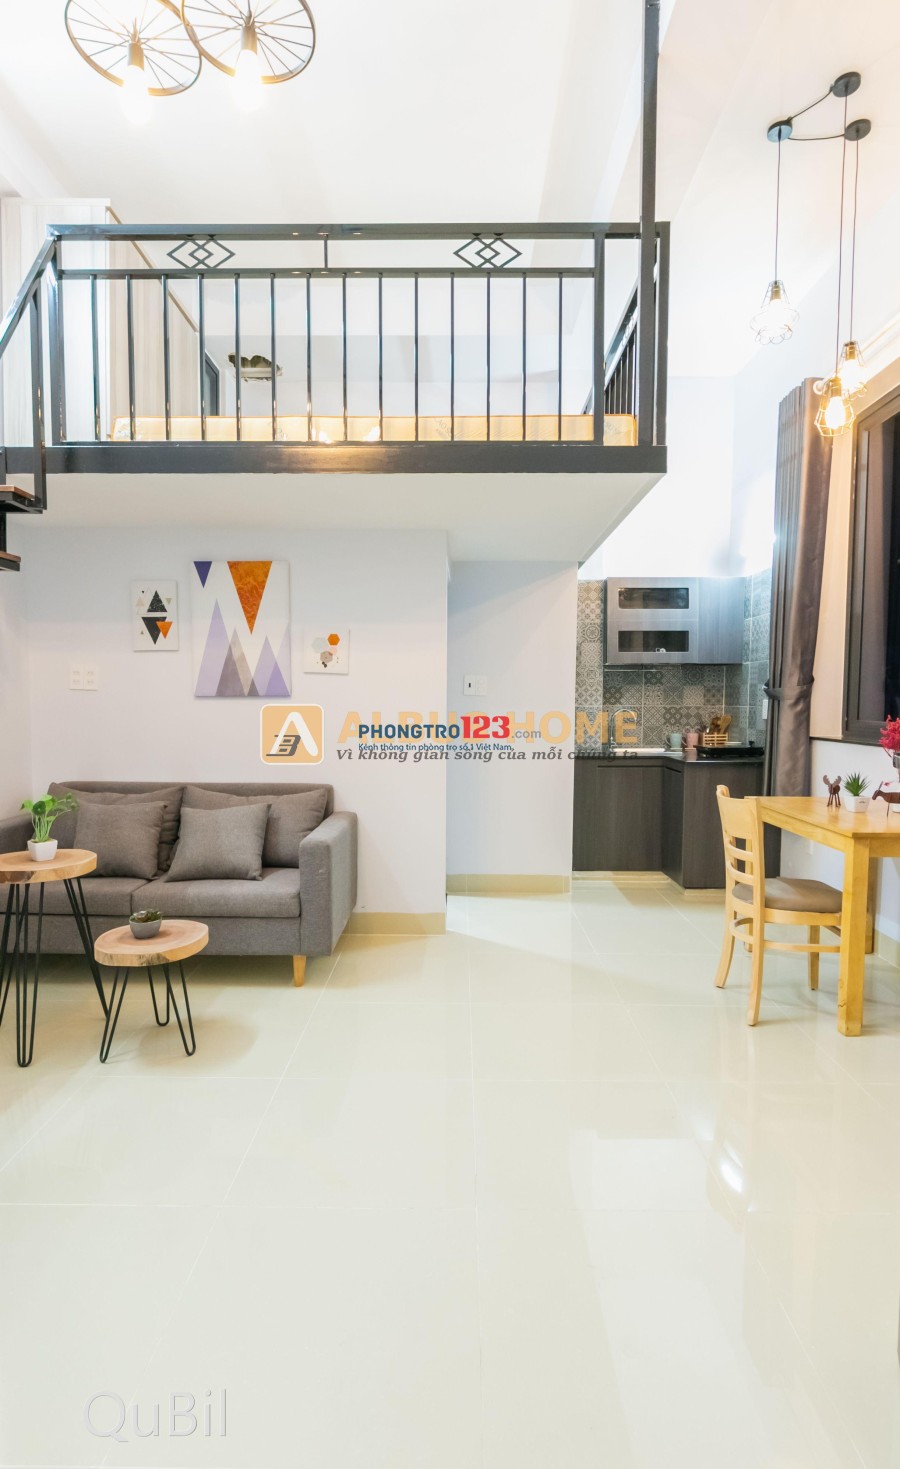 Chia sẻ kinh nghiệm] có nên mua căn hộ chung cư mini không? – Ngô Quốc Dũng